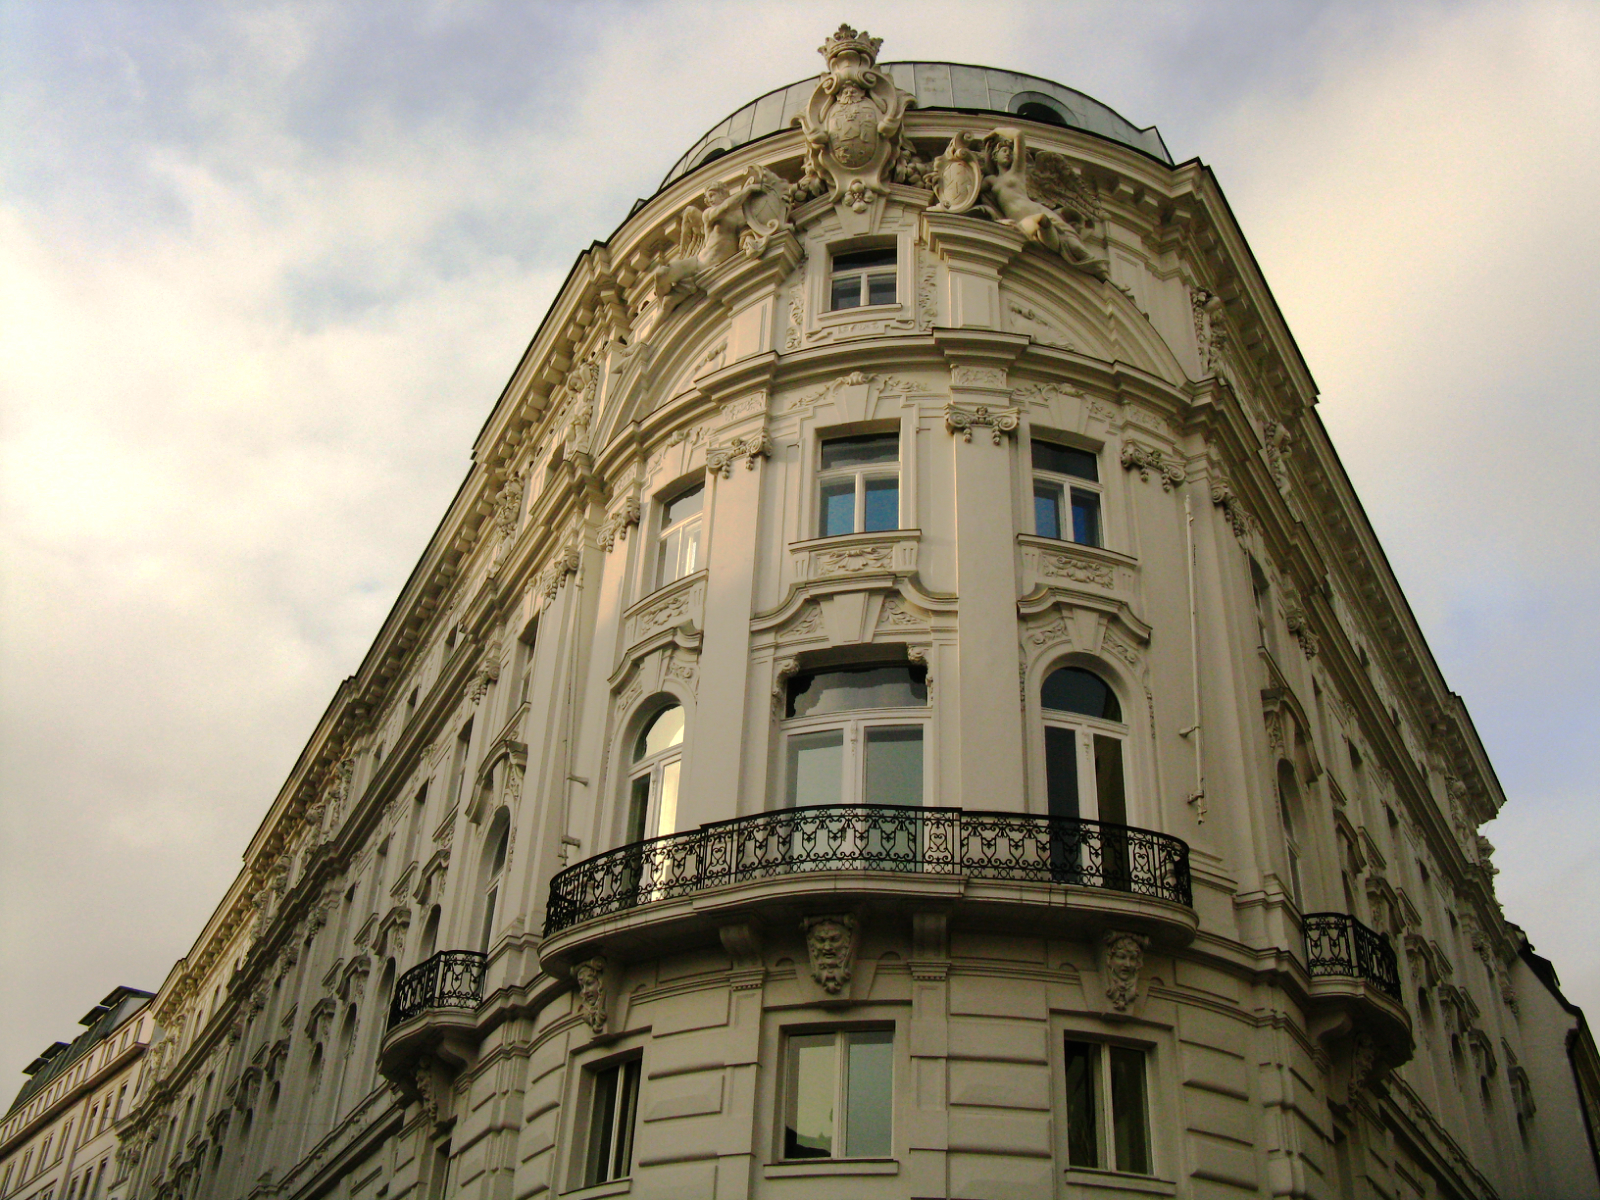 Vienna's grandiose buildings